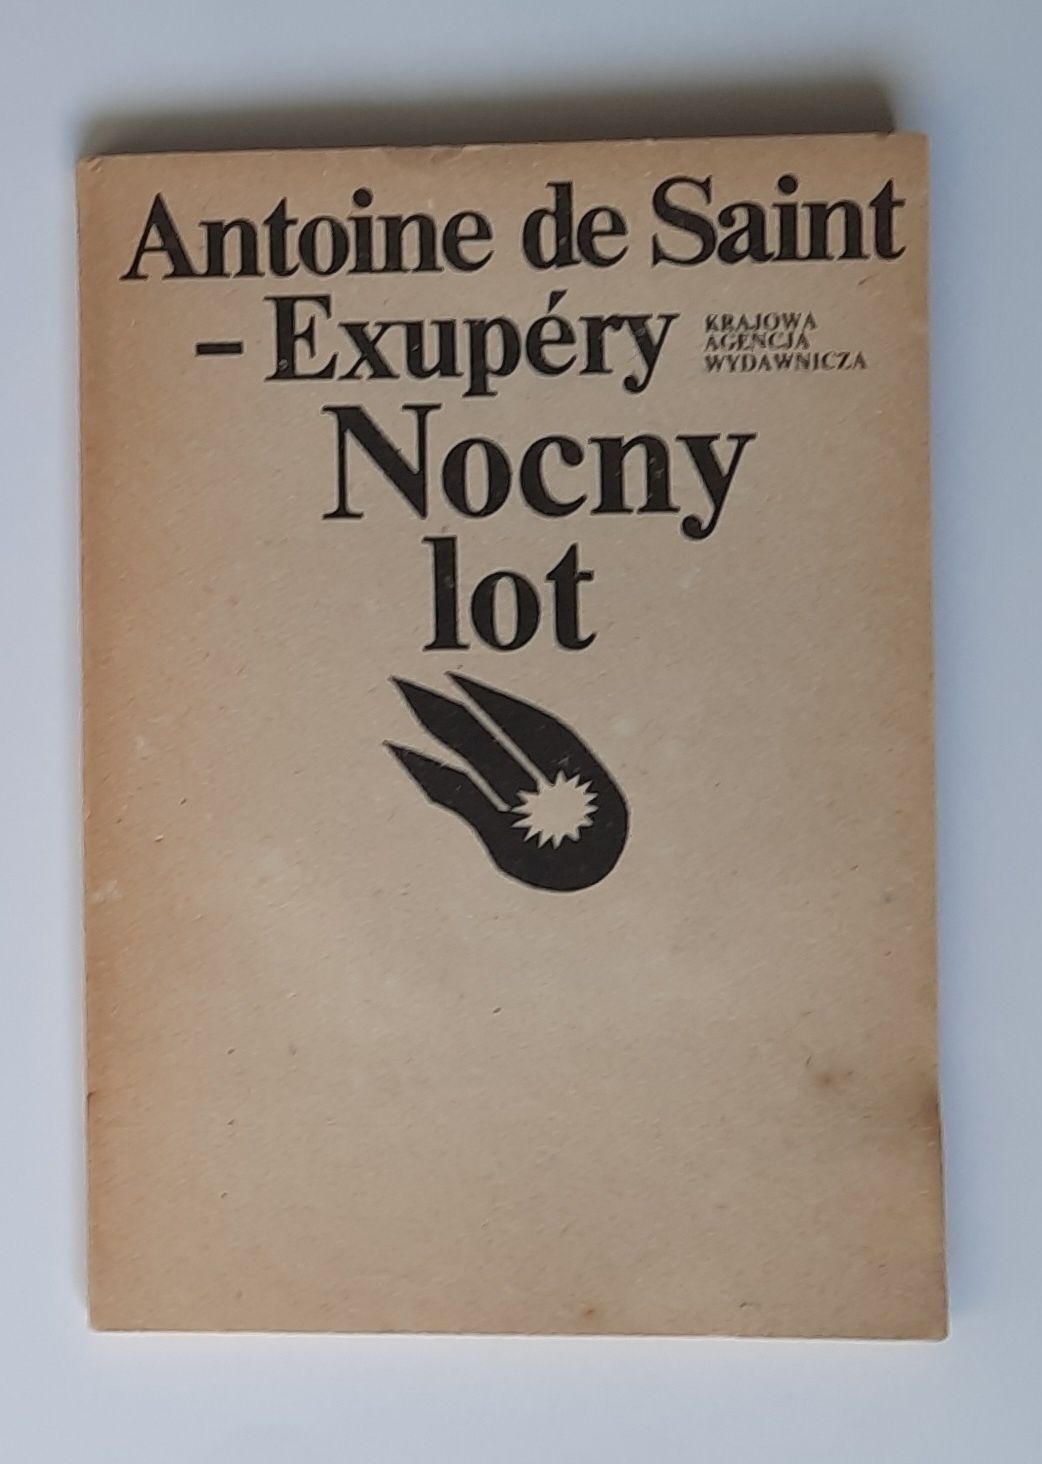 Nocny lot Antoine de Saint-Exupery